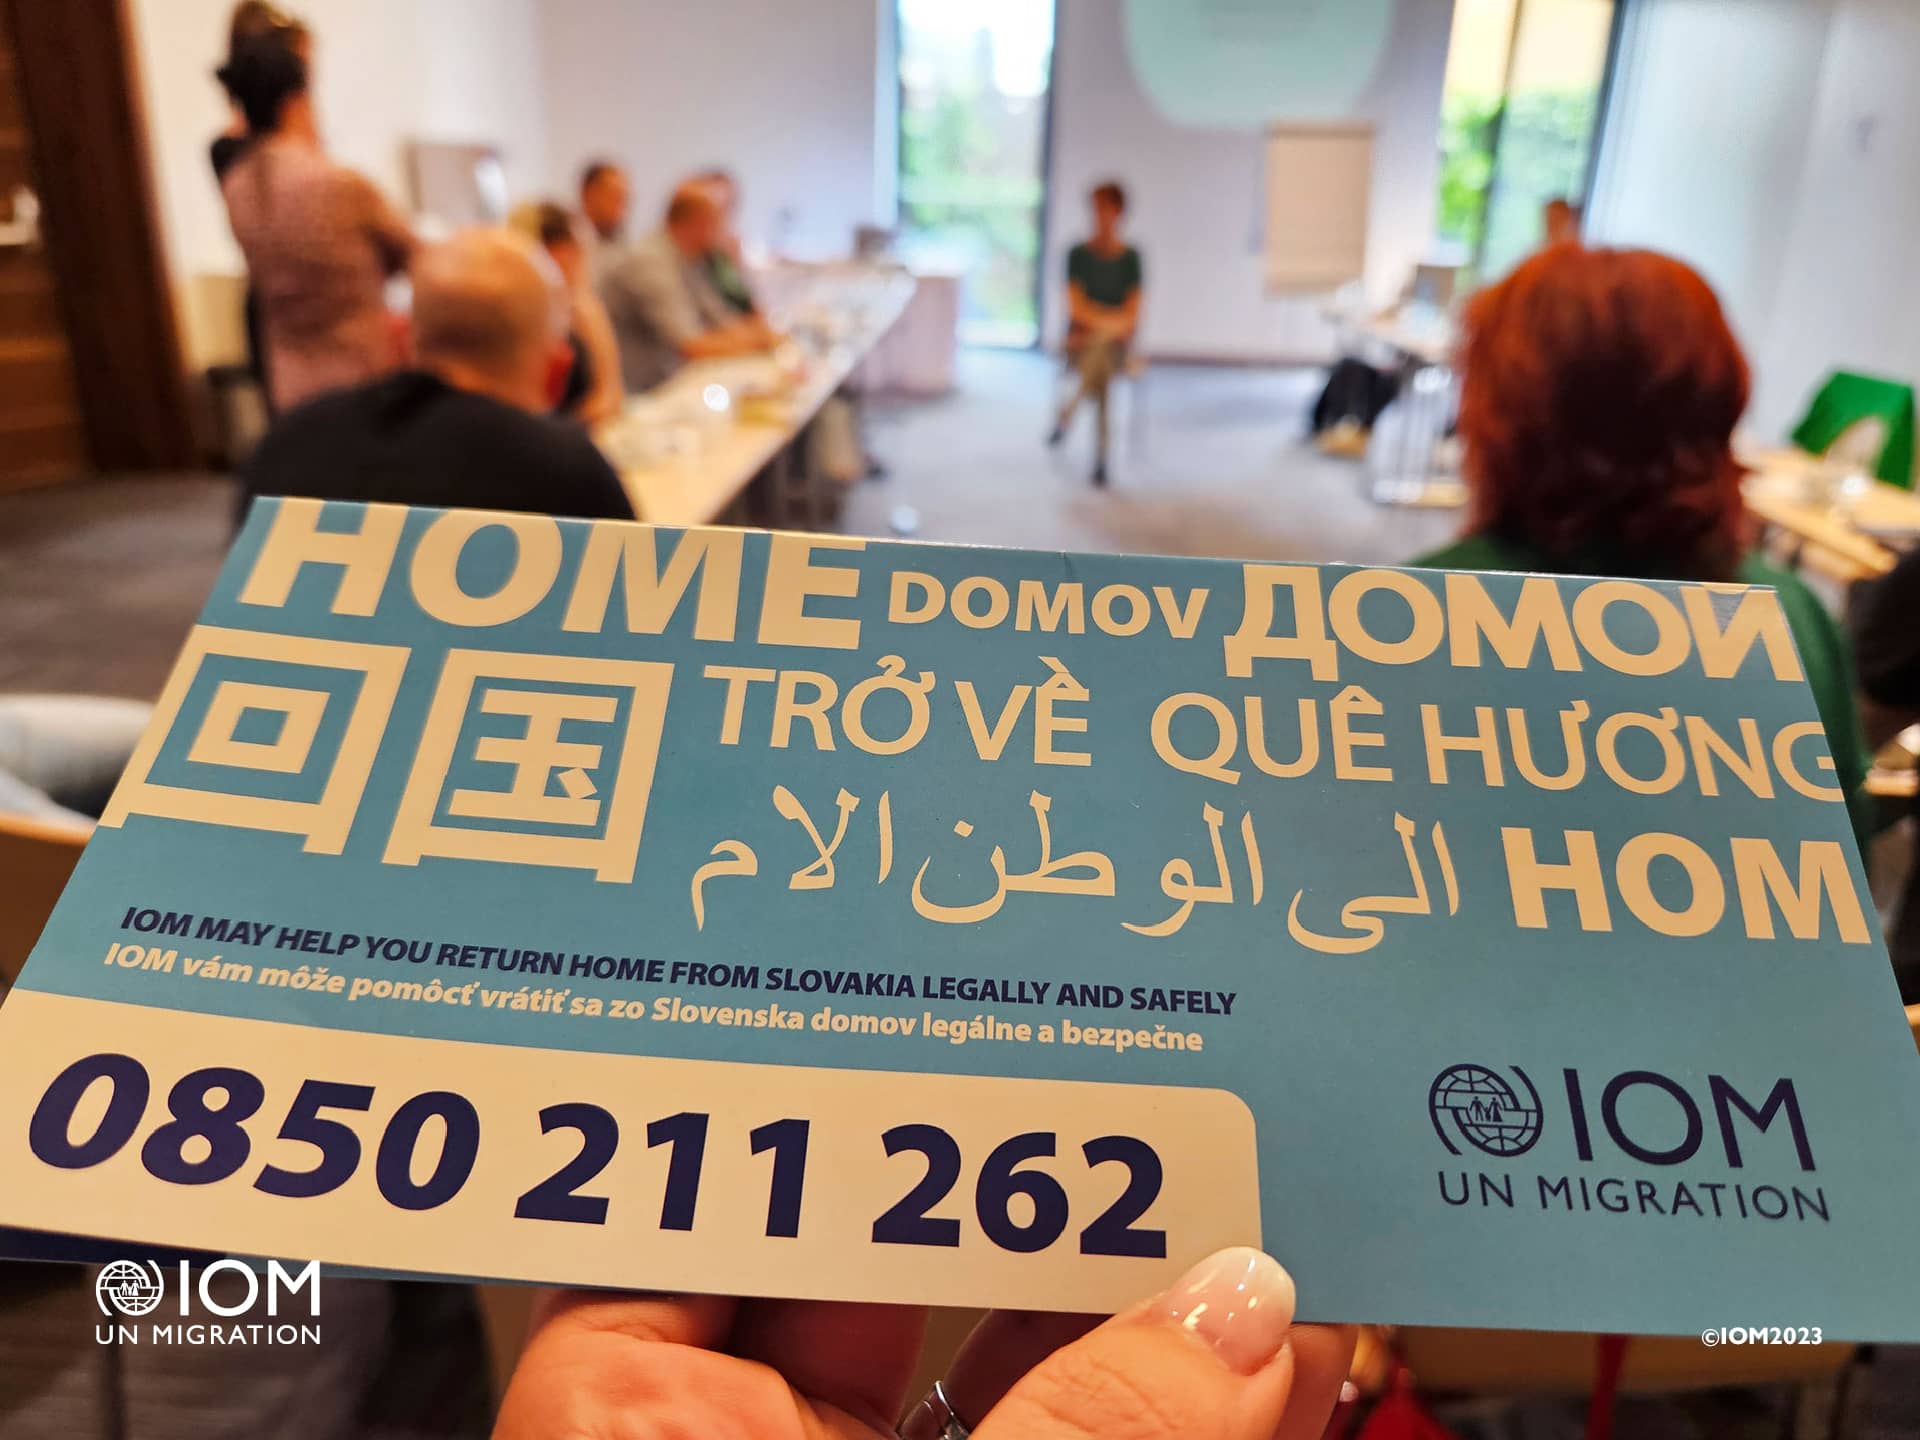 Foto - IOM zvyšuje povedomie o rôznych druhoch zraniteľnosti migrantov pri návrate domov. Foto © Medzinárodná organizácia pre migráciu (IOM) 2023.